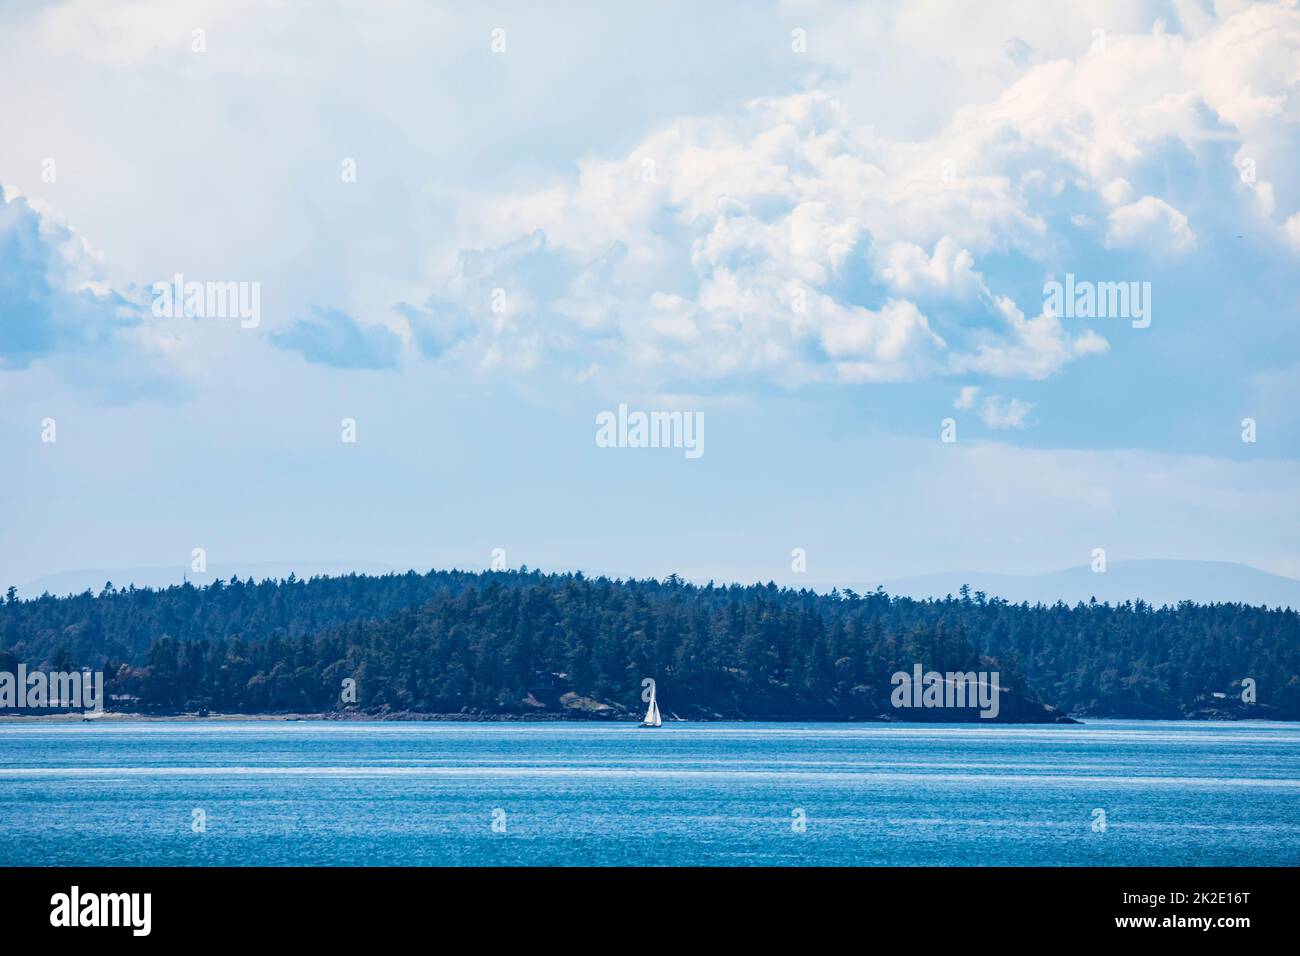 A sailboat in the San Juan Islands, Washington, USA. Stock Photo